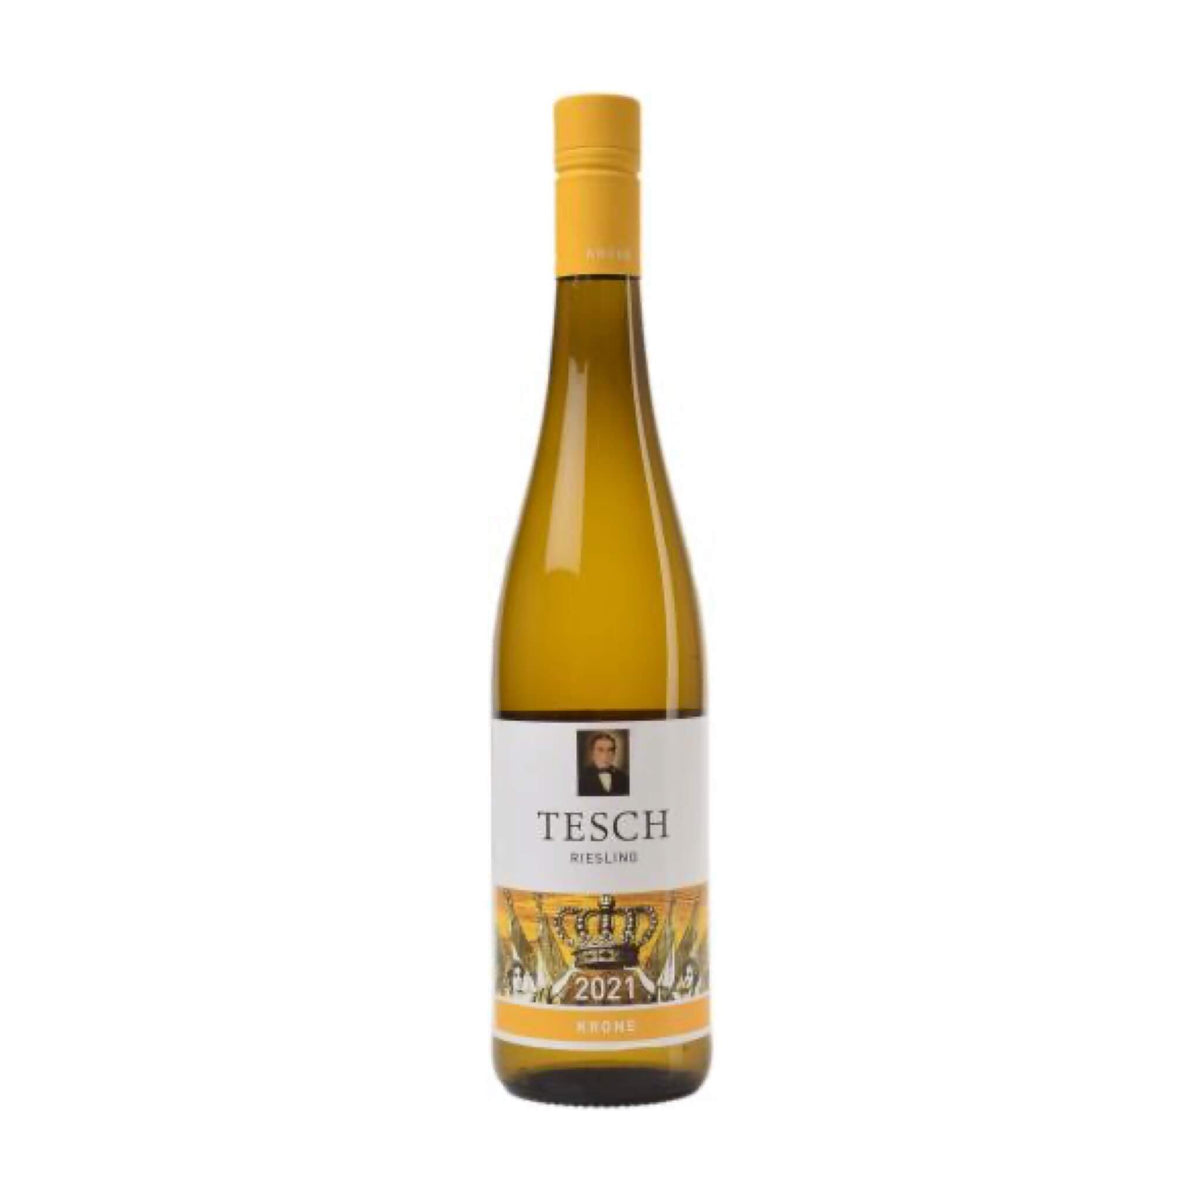 Weingut Tesch-Weißwein-Riesling-2021 Riesling Krone trocken Nahe-WINECOM